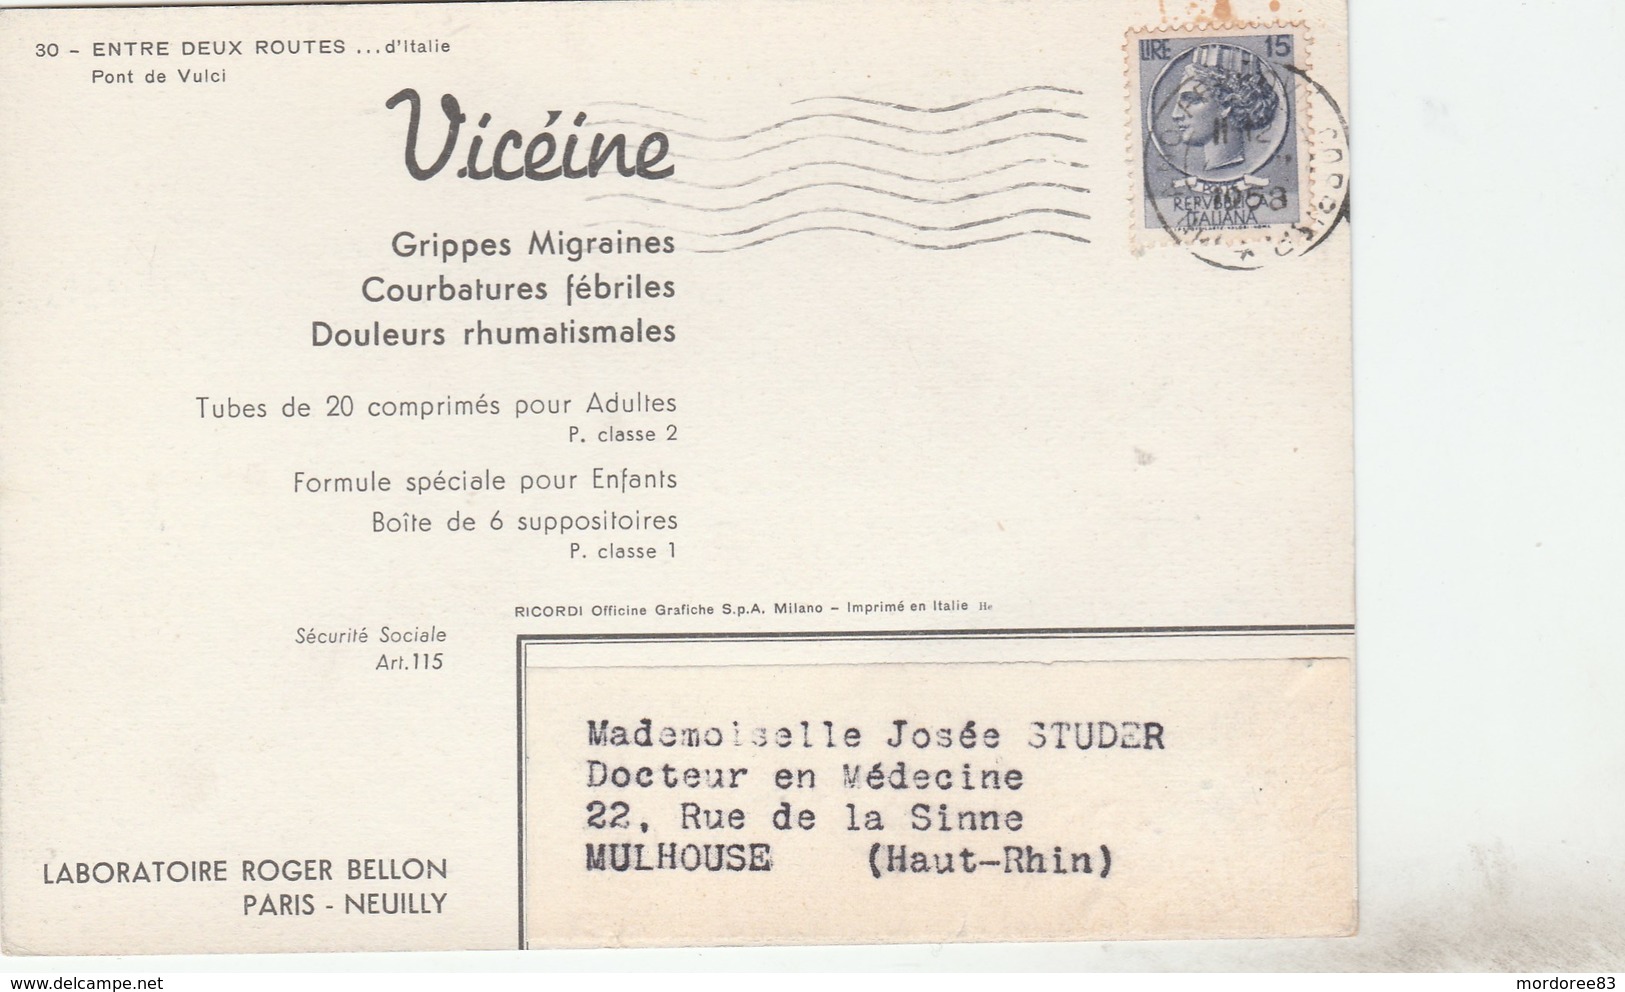 CARTE PUBLICITAIRE LABORATOIRE BELLON - VICEINE 1958 ITALIE POUR MULHOUSE - Tda11 - Pharmacy